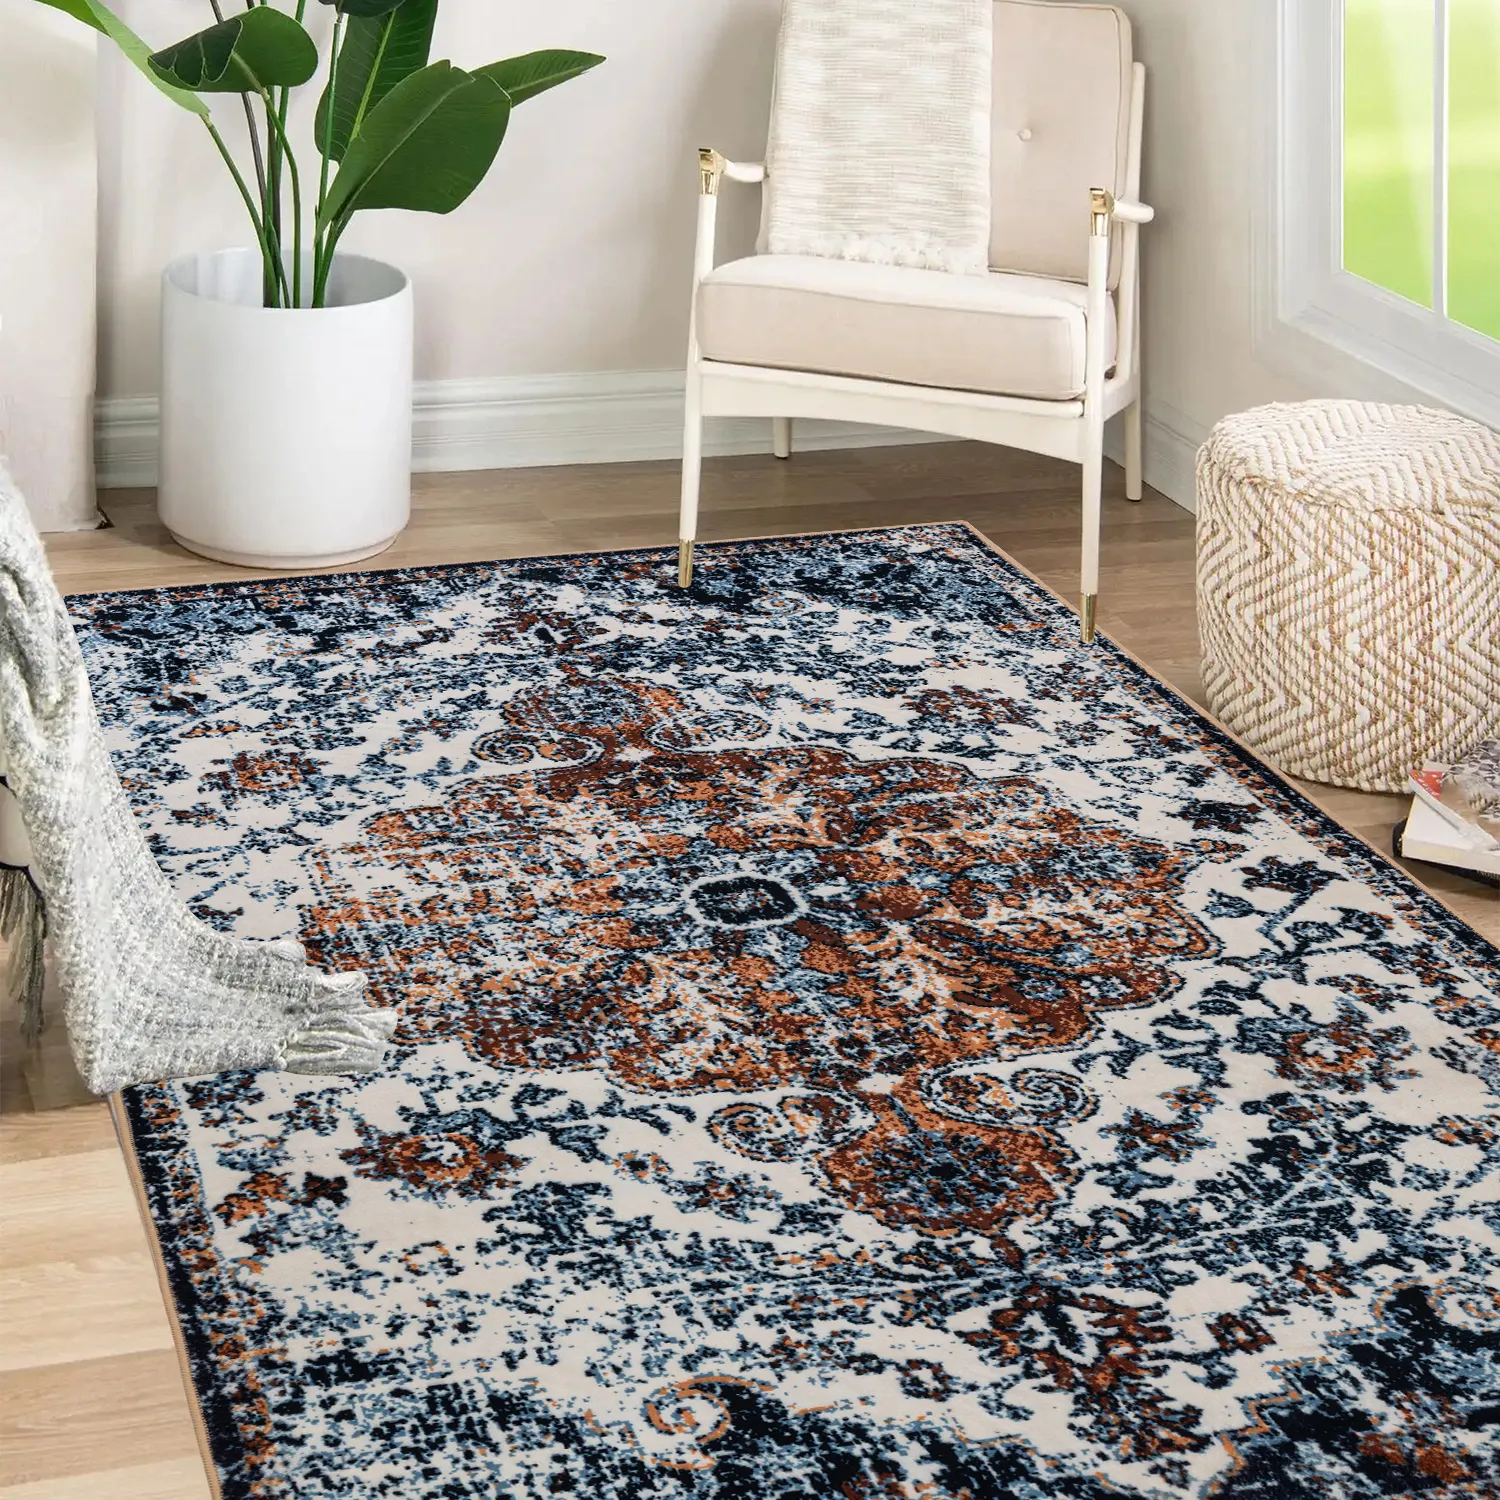 Karpet area boho karpet foto cetak kustom kualitas tinggi dapat dicuci untuk karpet dapur